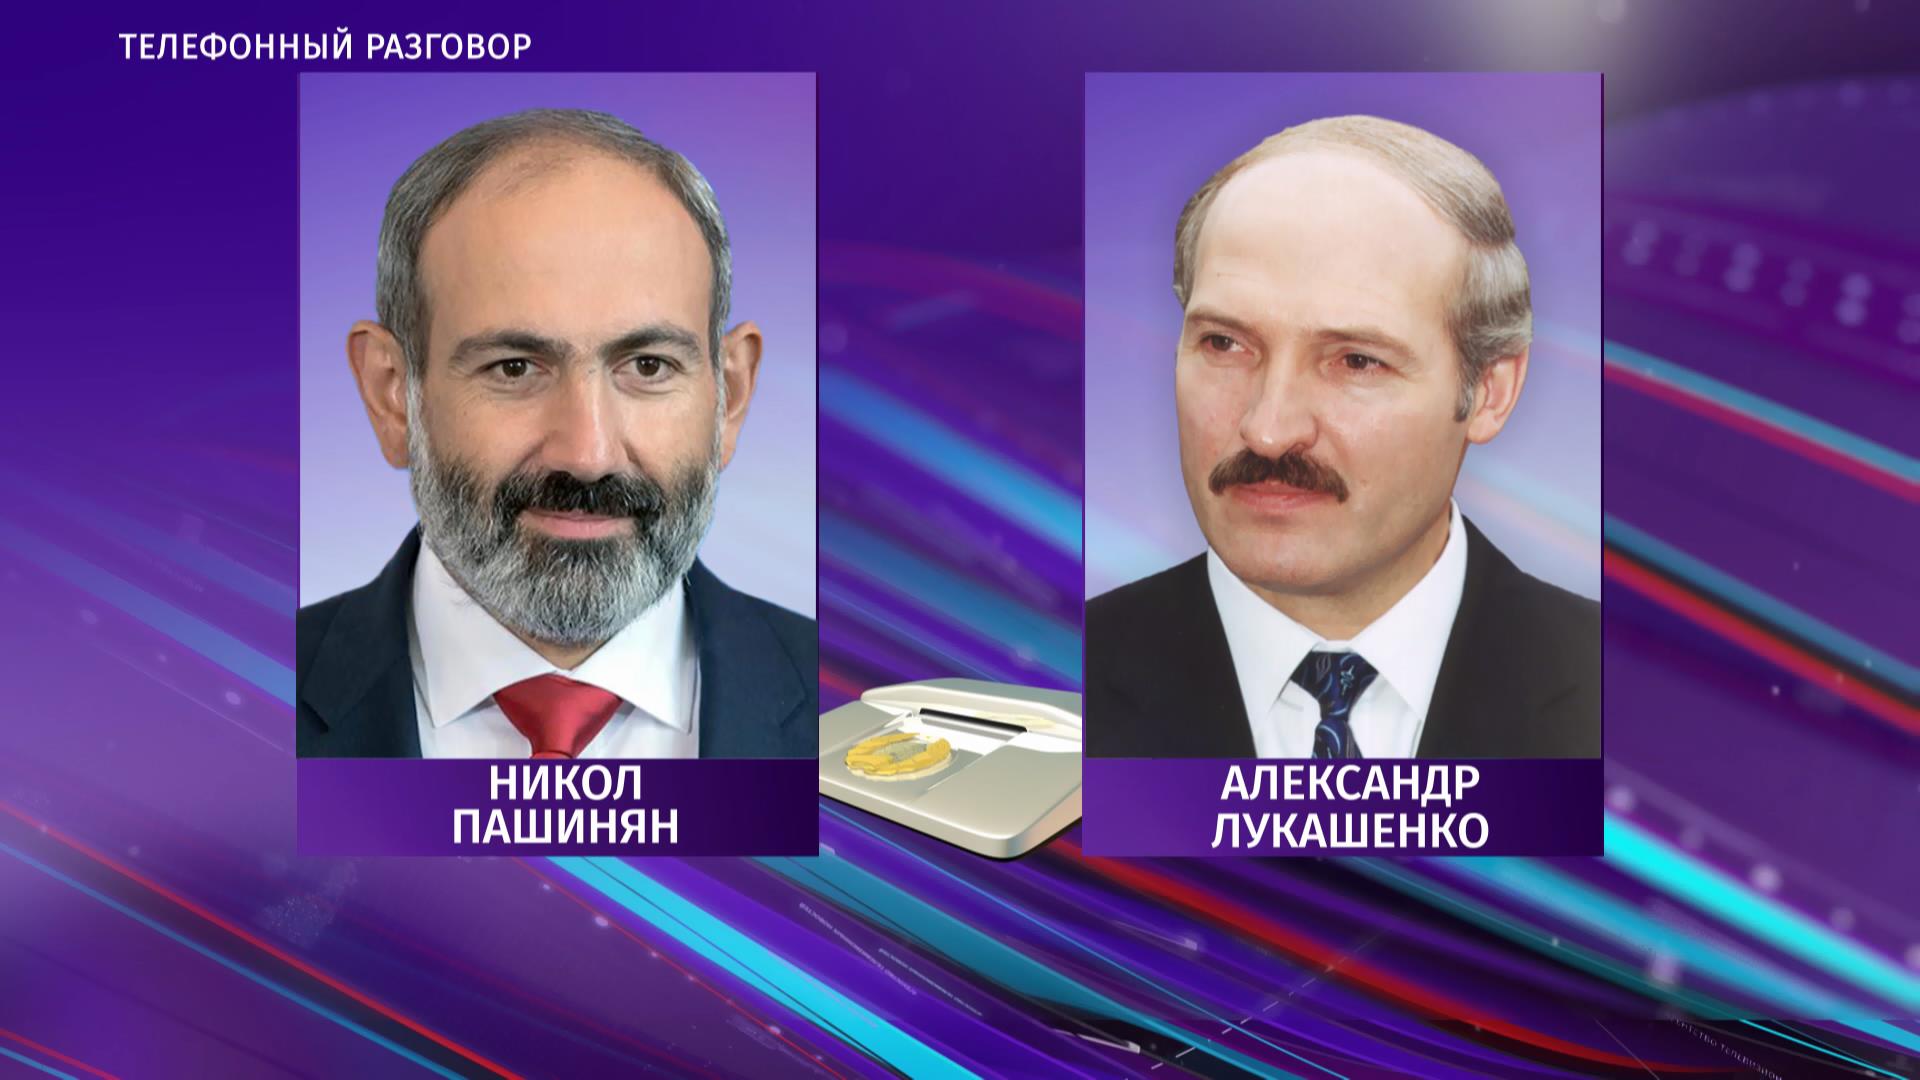 Лукашенко и Пашинян обсудили сотрудничество и договорились о встрече